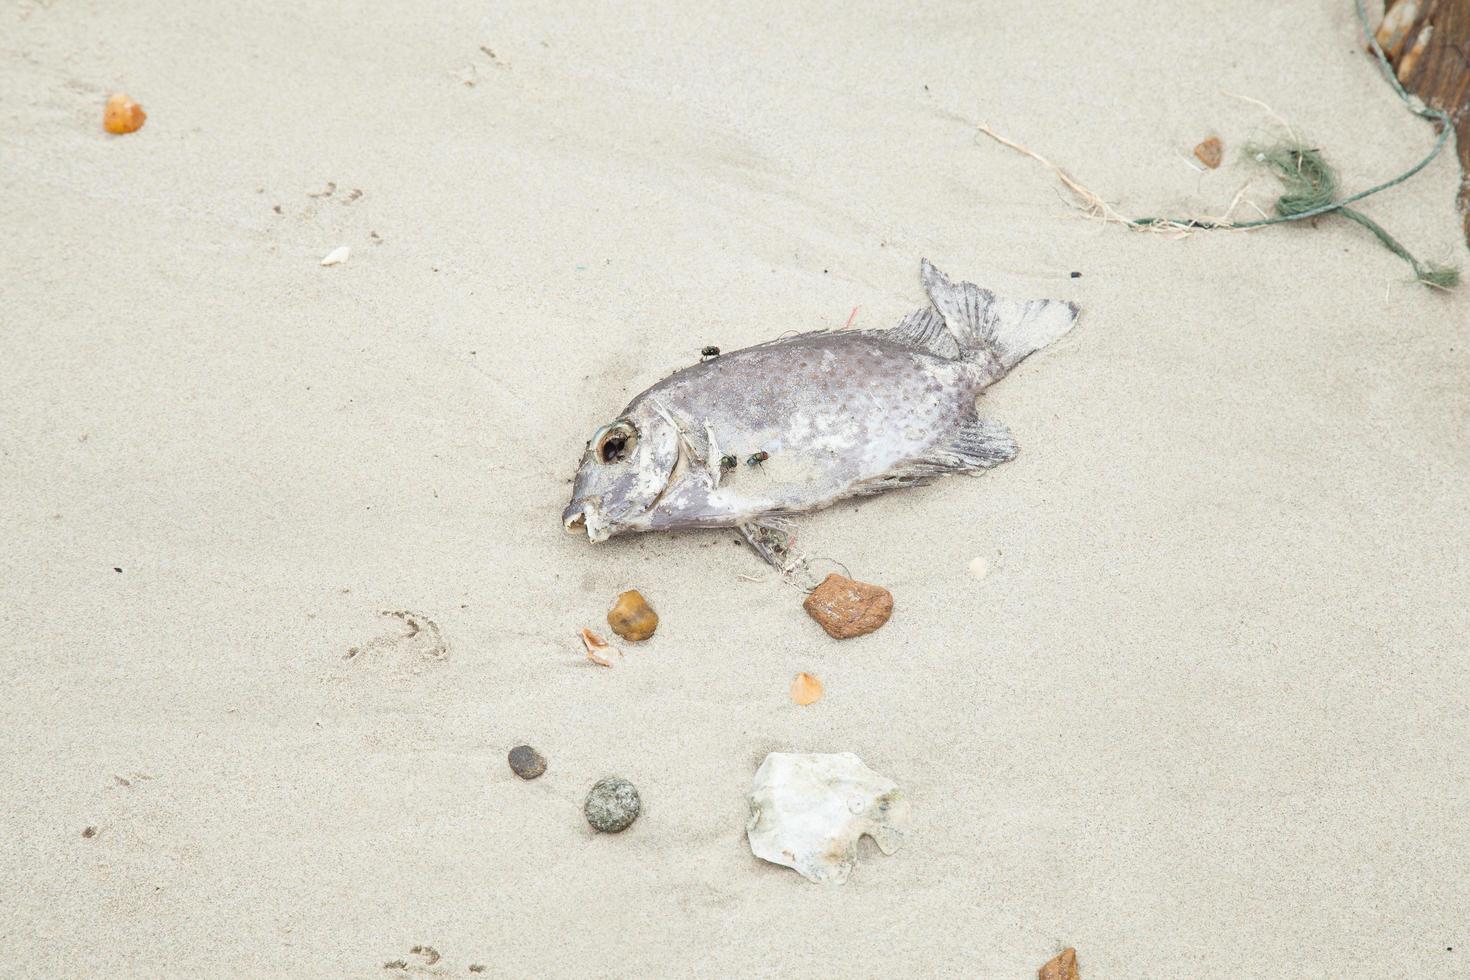 Dead fish on the beach photo